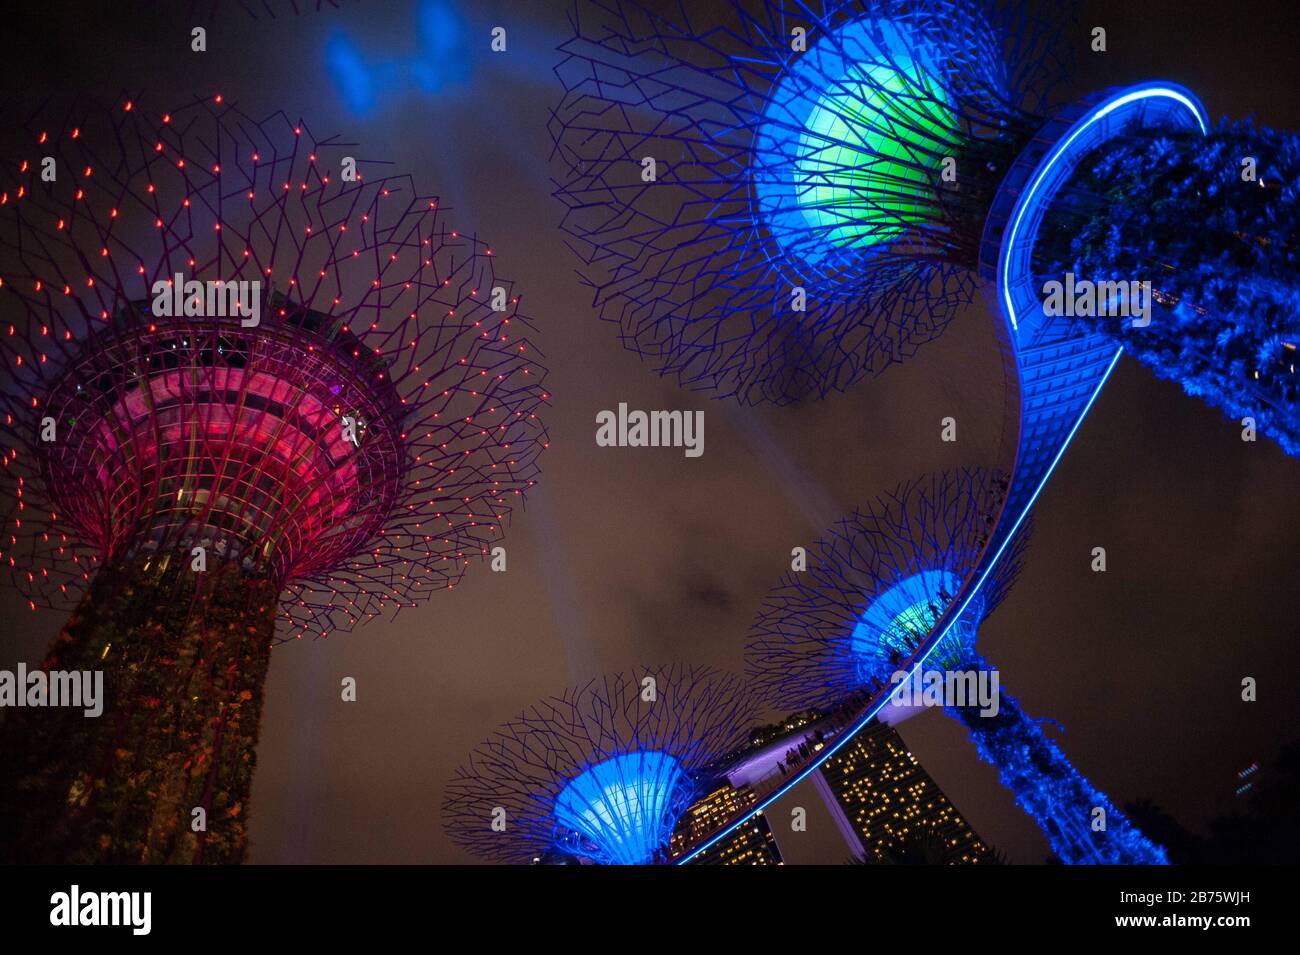 06.05.2017, Singapur, Republik Singapur, Asien - Lichtstrahlen, die Lichtschnur darstellen, werden während der jährlichen "Star Wars"-Feierlichkeiten von den Superbäumen in den Abendhimmel projiziert. Die Supertrees sind Teil der Park Gardens by the Bay. [Automatisierte Übersetzung] Stockfoto